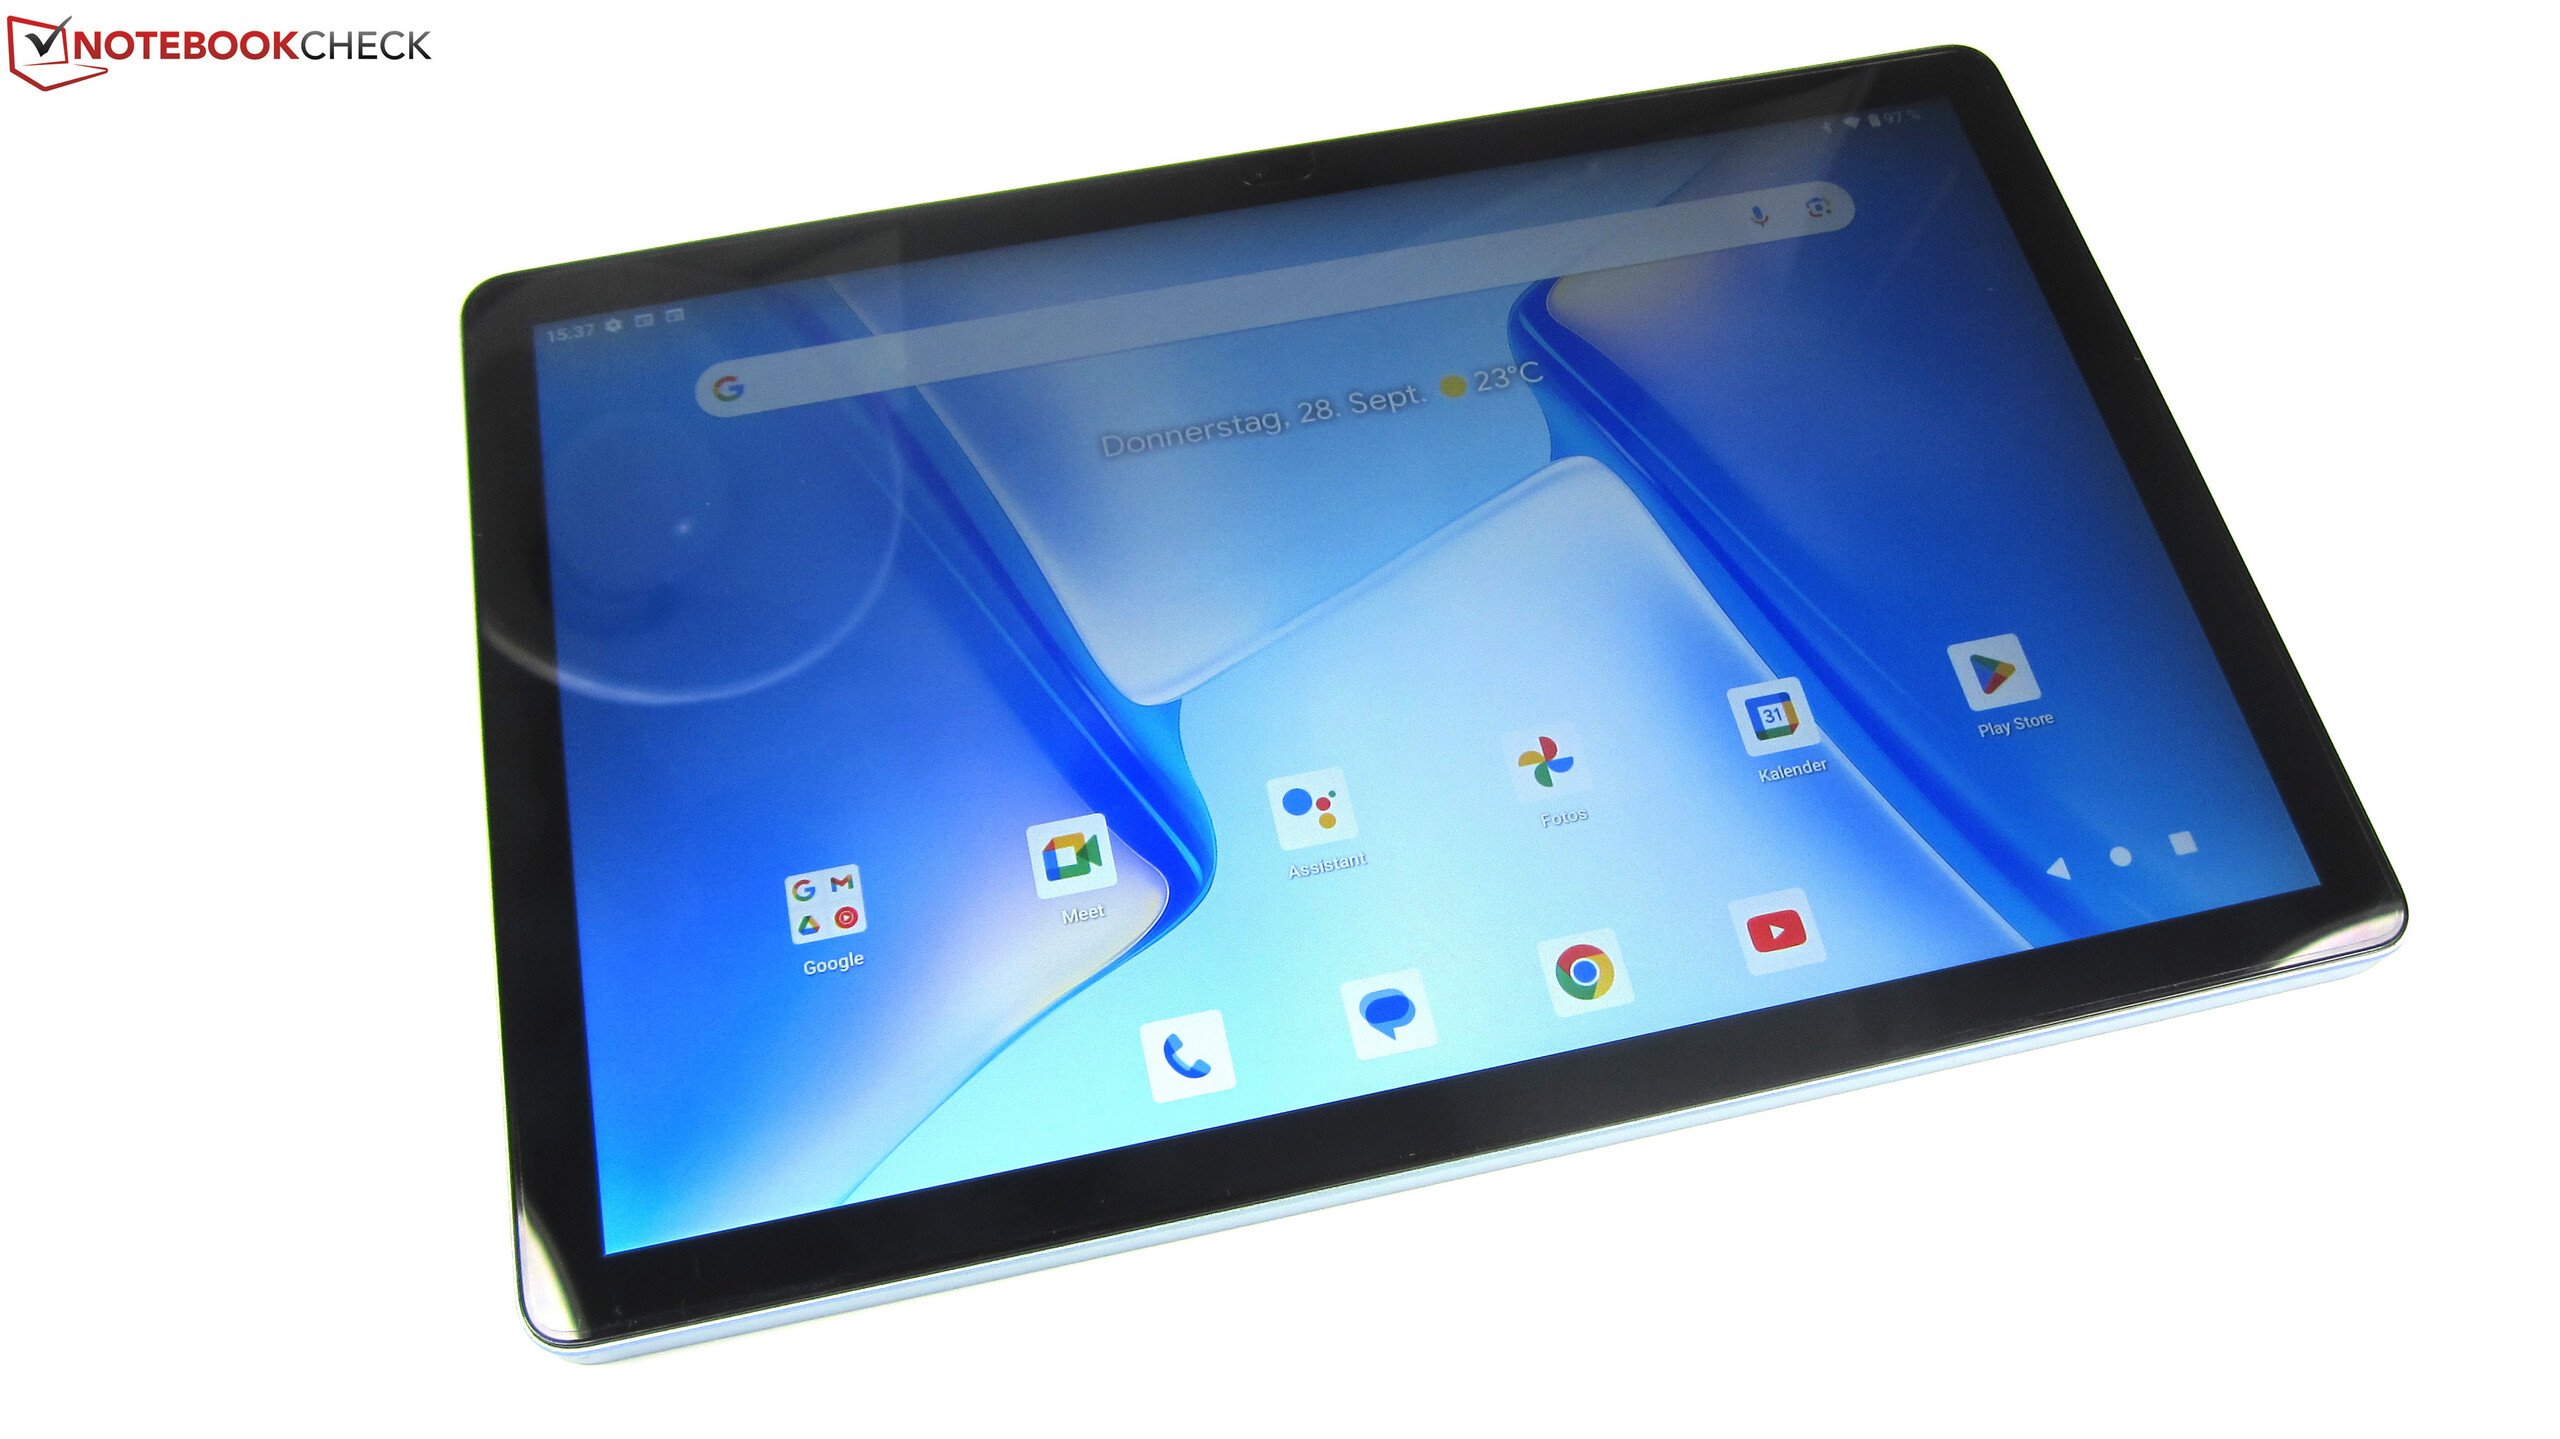 Tablette Android Teclast M50, 10,1 Pouces, UNISOC T606, 6/128GO